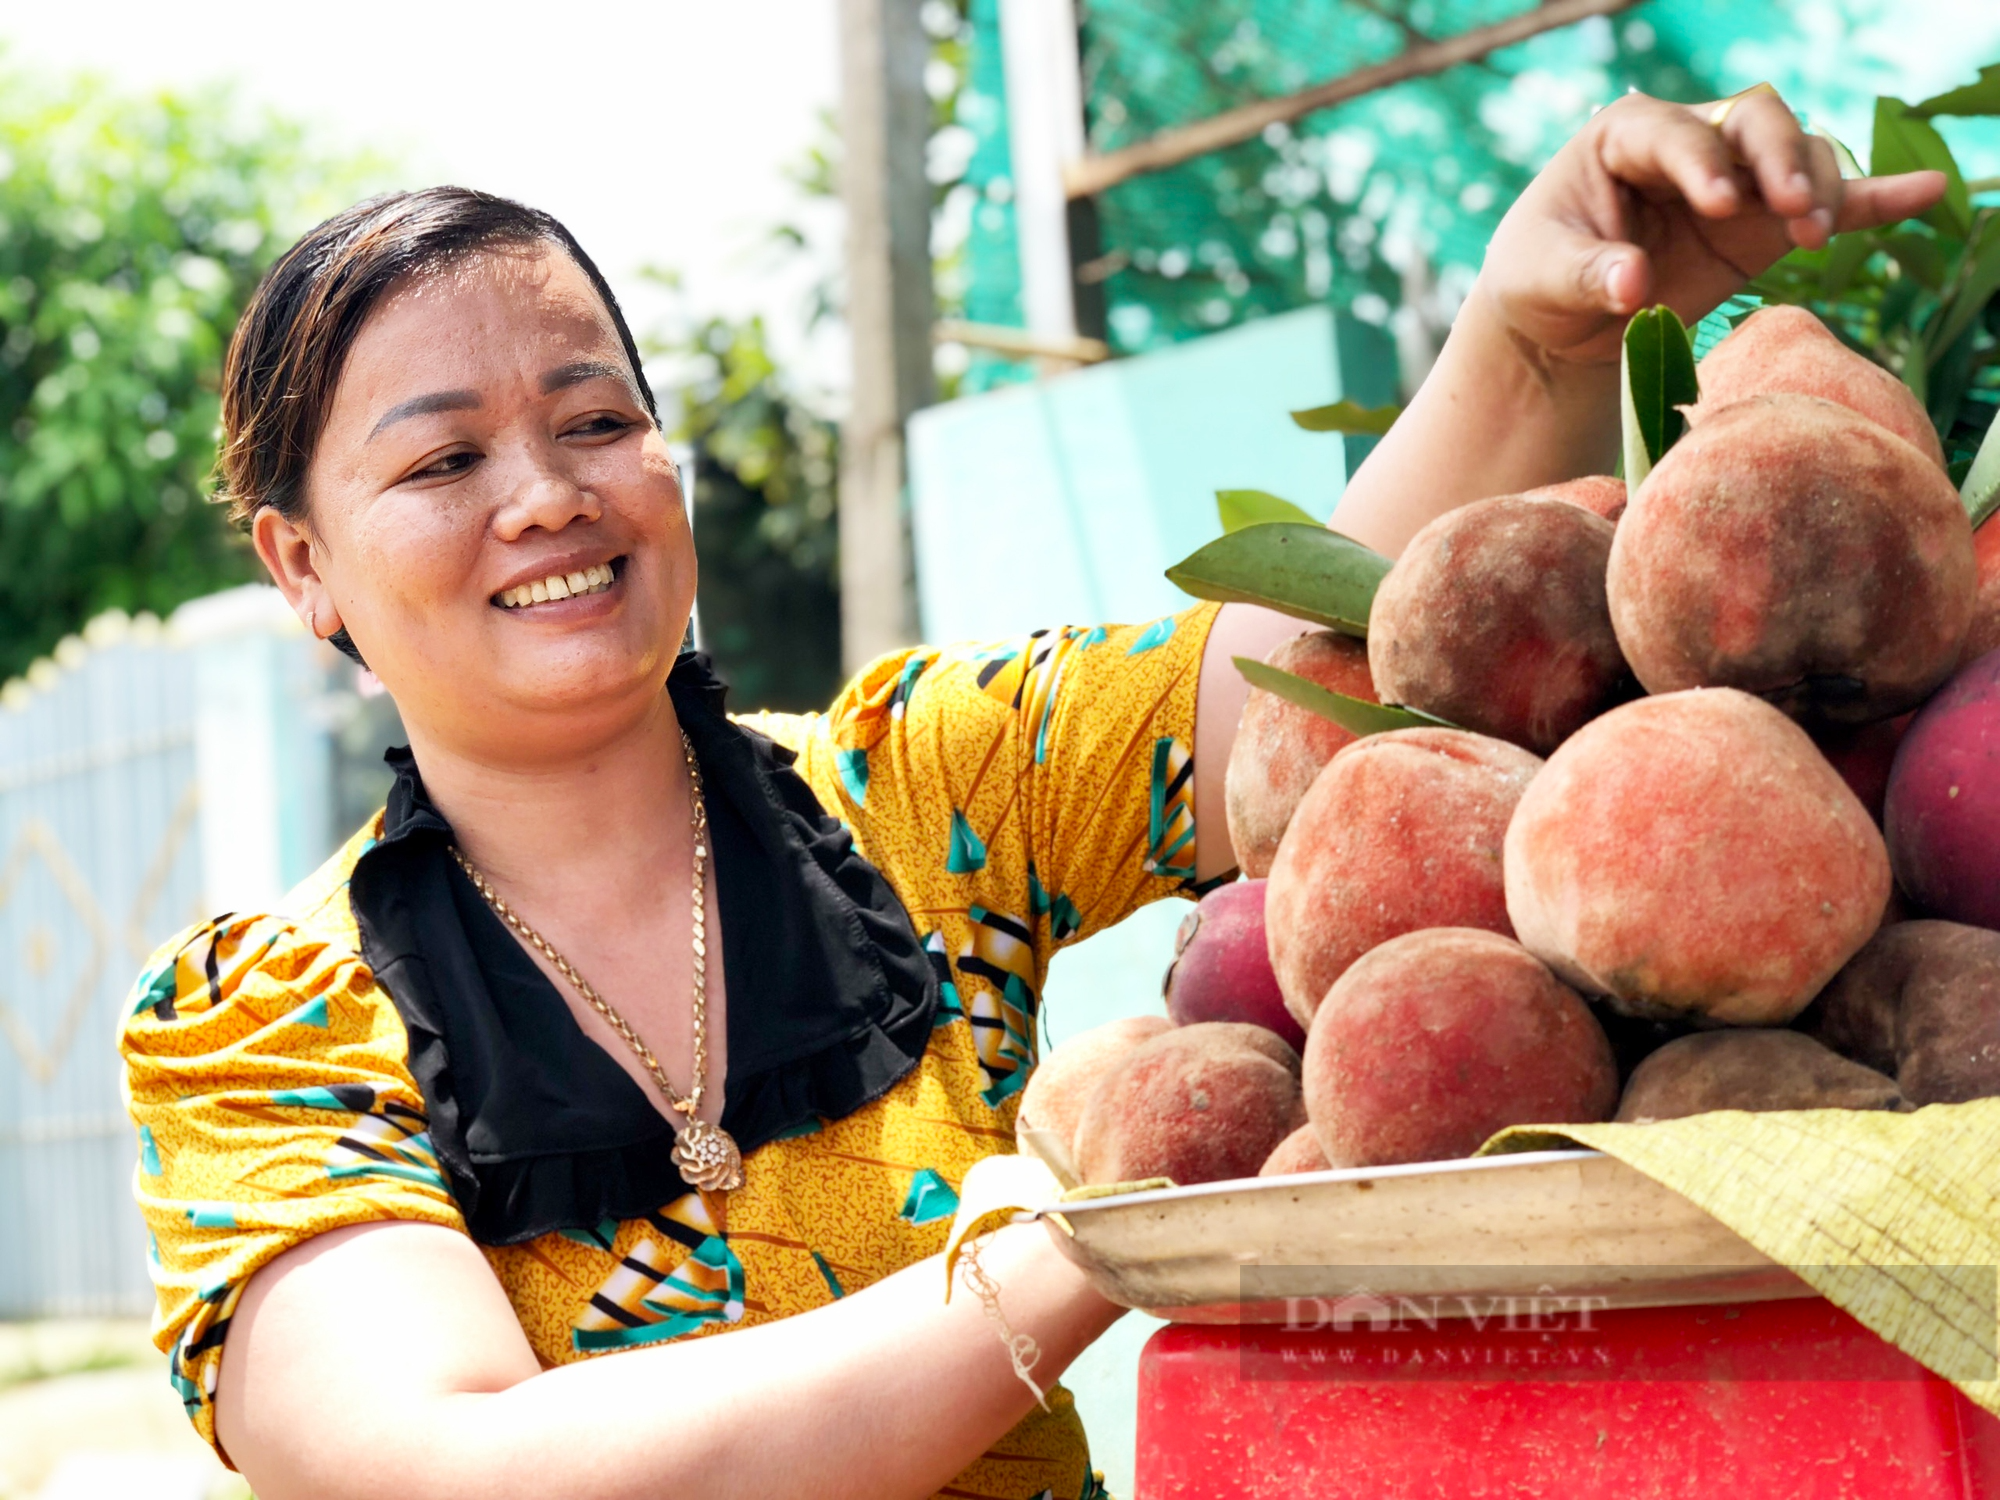 Hồng nhung là trái gì mà giúp người dân tộc Khmer Sóc Trăng có đồng ra đồng vô ổn định? - Ảnh 1.